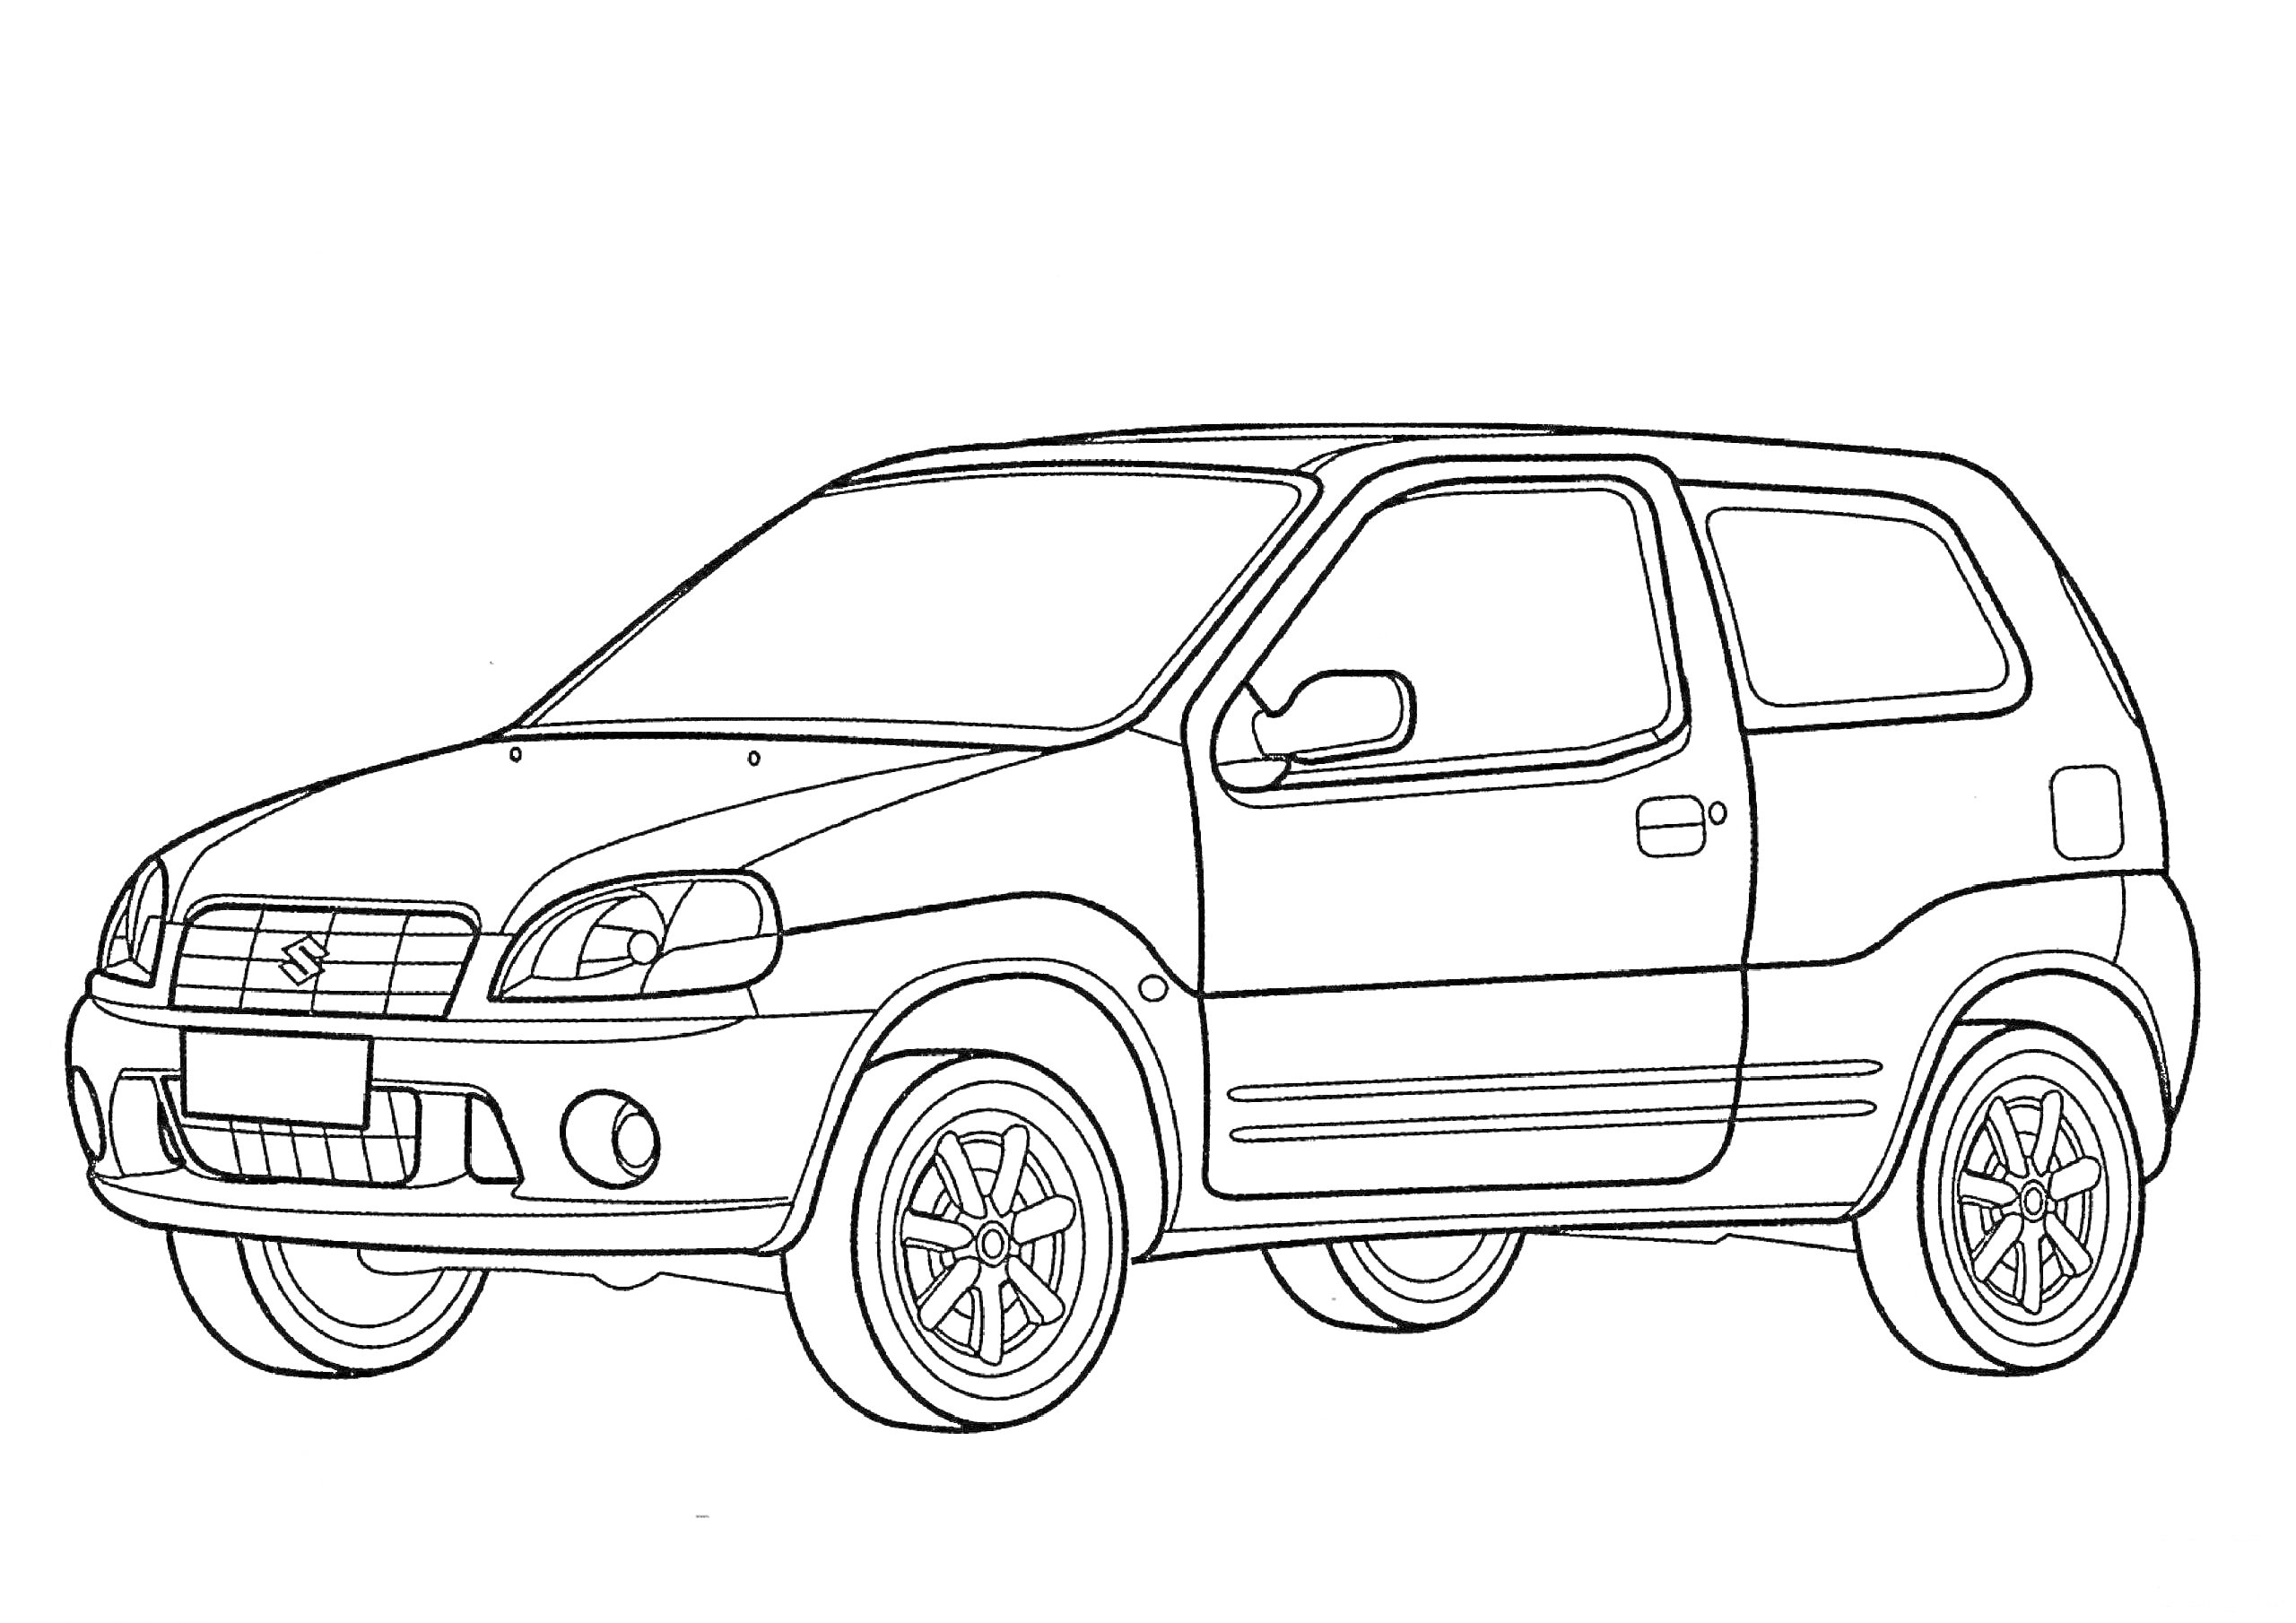 Автомобиль Suzuki с четырьмя колёсами, фарами, боковыми зеркалами и ручками дверей